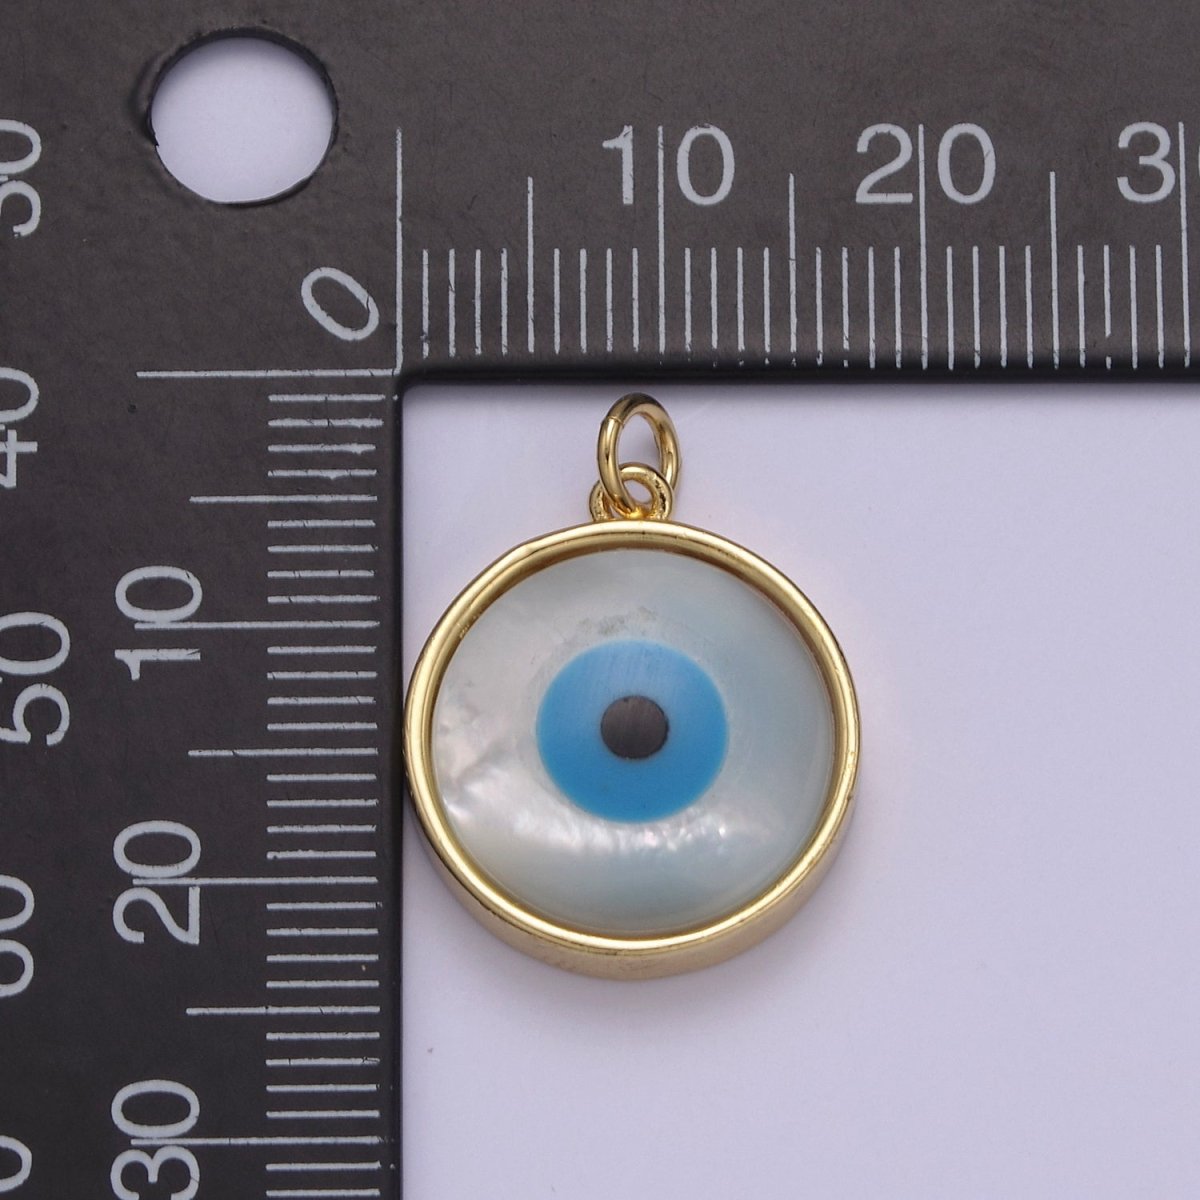 14k Gold Filled Rim Evil Eye Charm Pendant- Gold Round Evil Eye Charm with Natural White Shell Evil Eye N-833 - DLUXCA